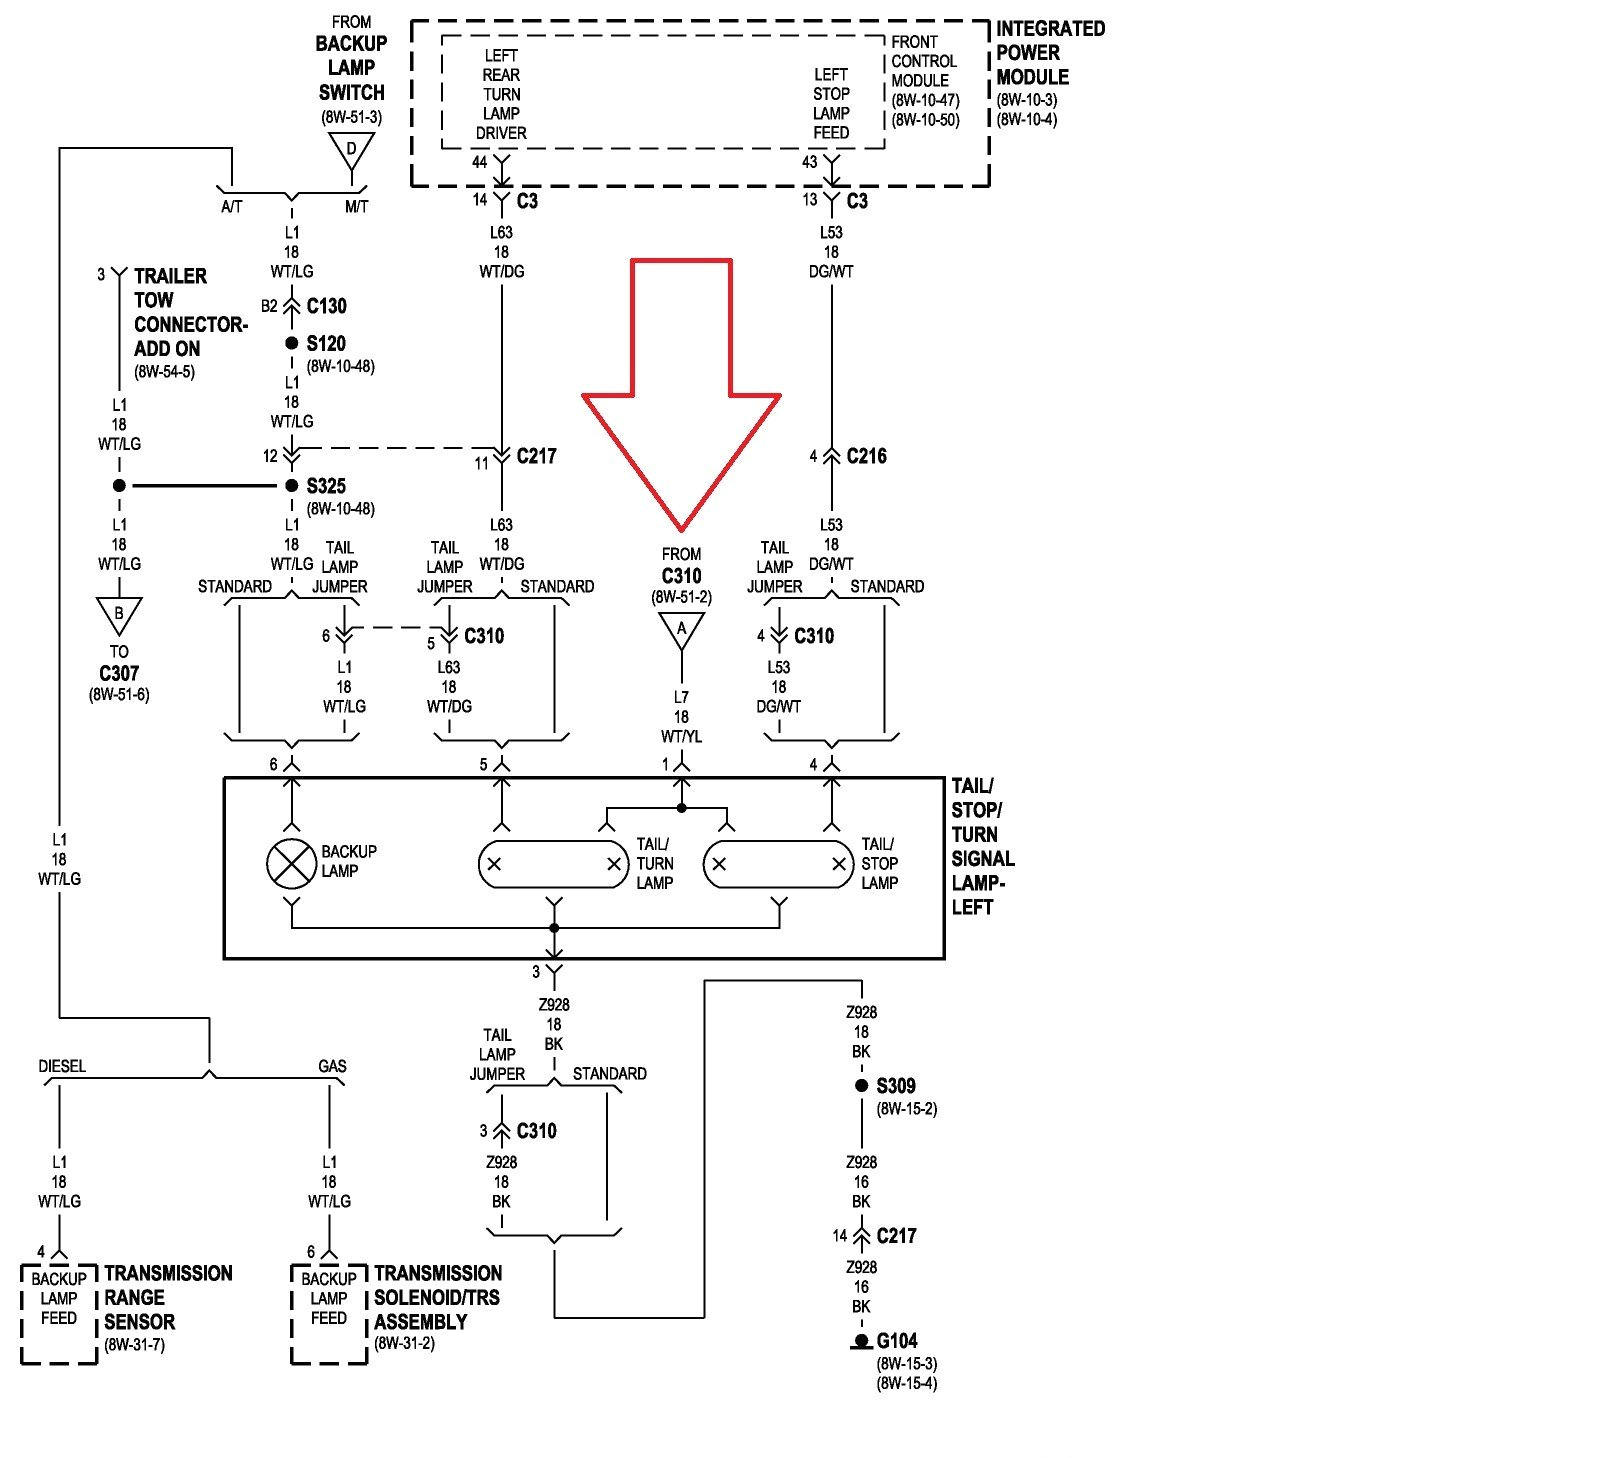 2004 dodge ram wiring wiring diagrams konsult 2004 dodge ram wiring schematic